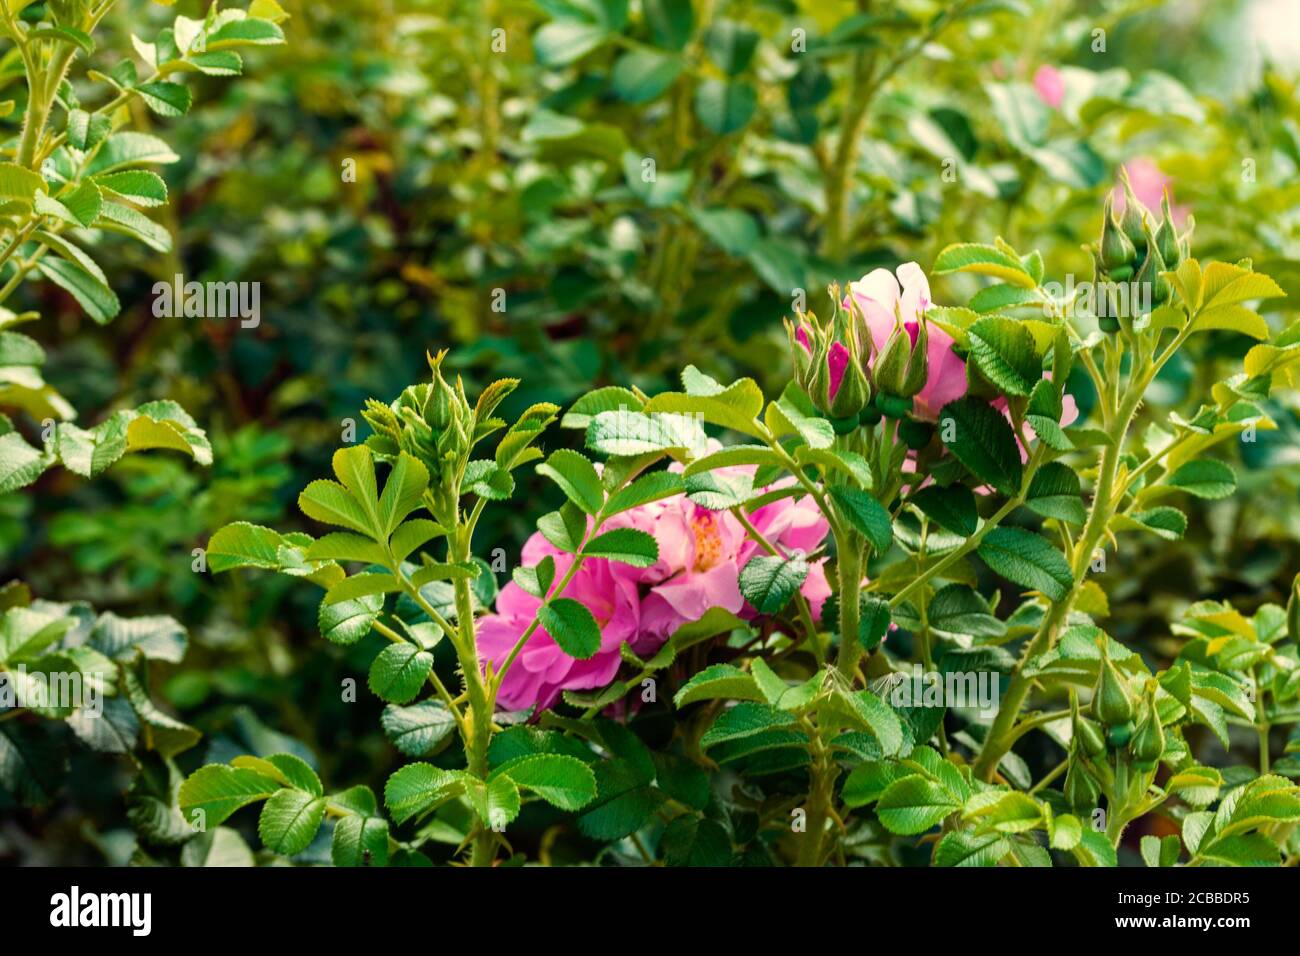 Schönheit in der Natur. Blume zwischen den grünen Blättern. Das Foto wurde im Botanischen Garten Tscheljabinsk aufgenommen. Stockfoto